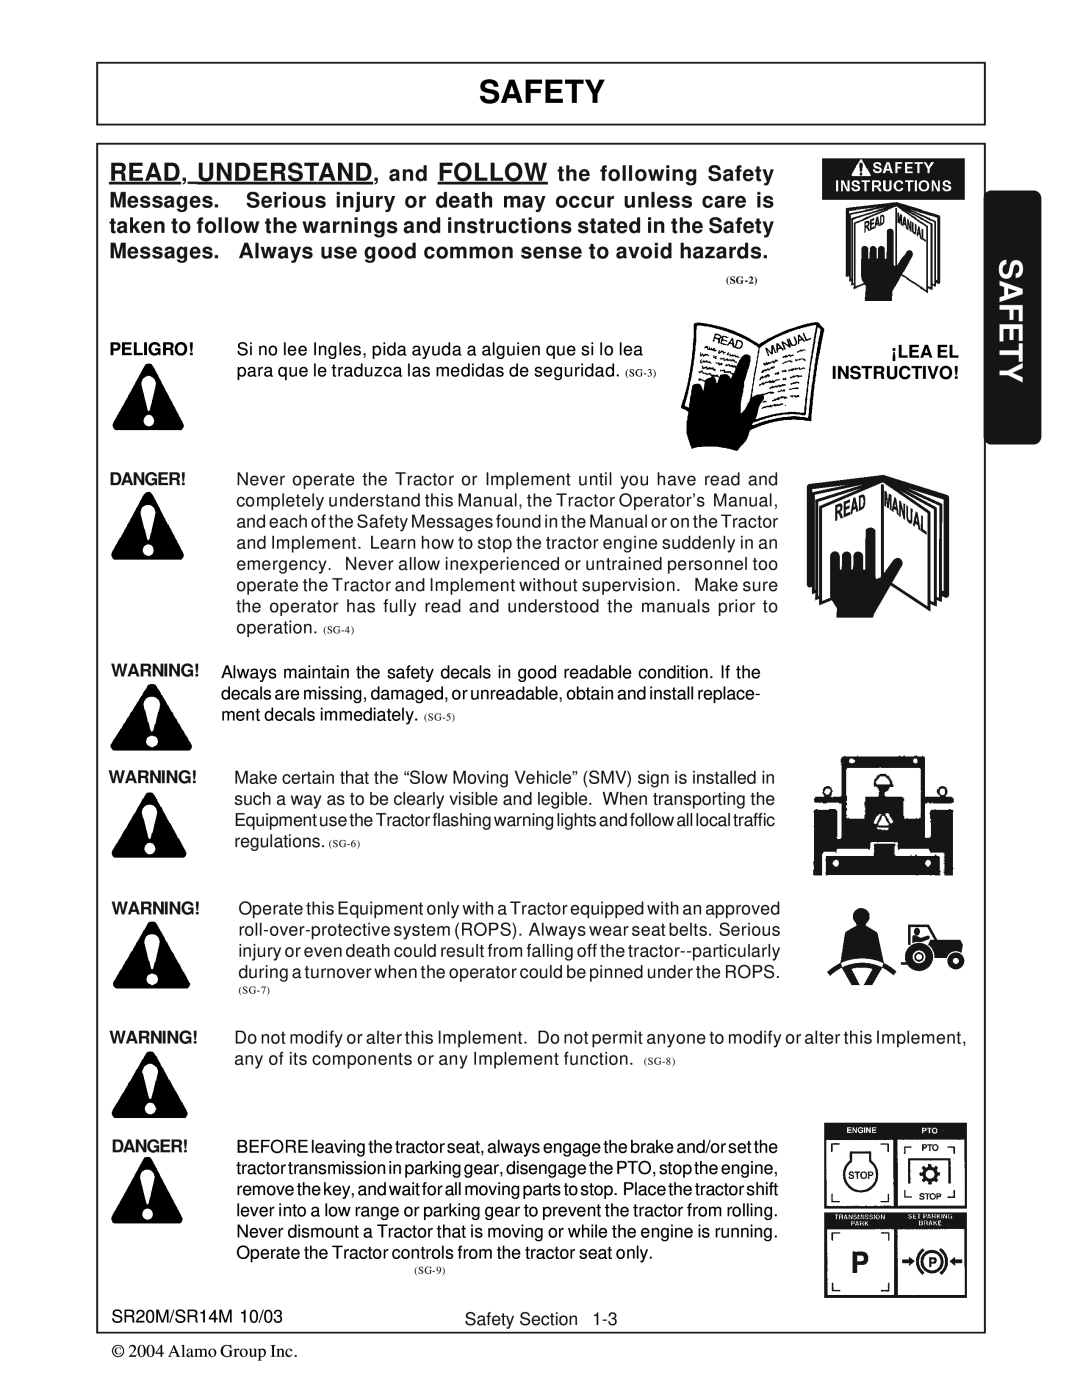 Alamo SR14, SR20 manual Safety, ¡Lea El Instructivo 